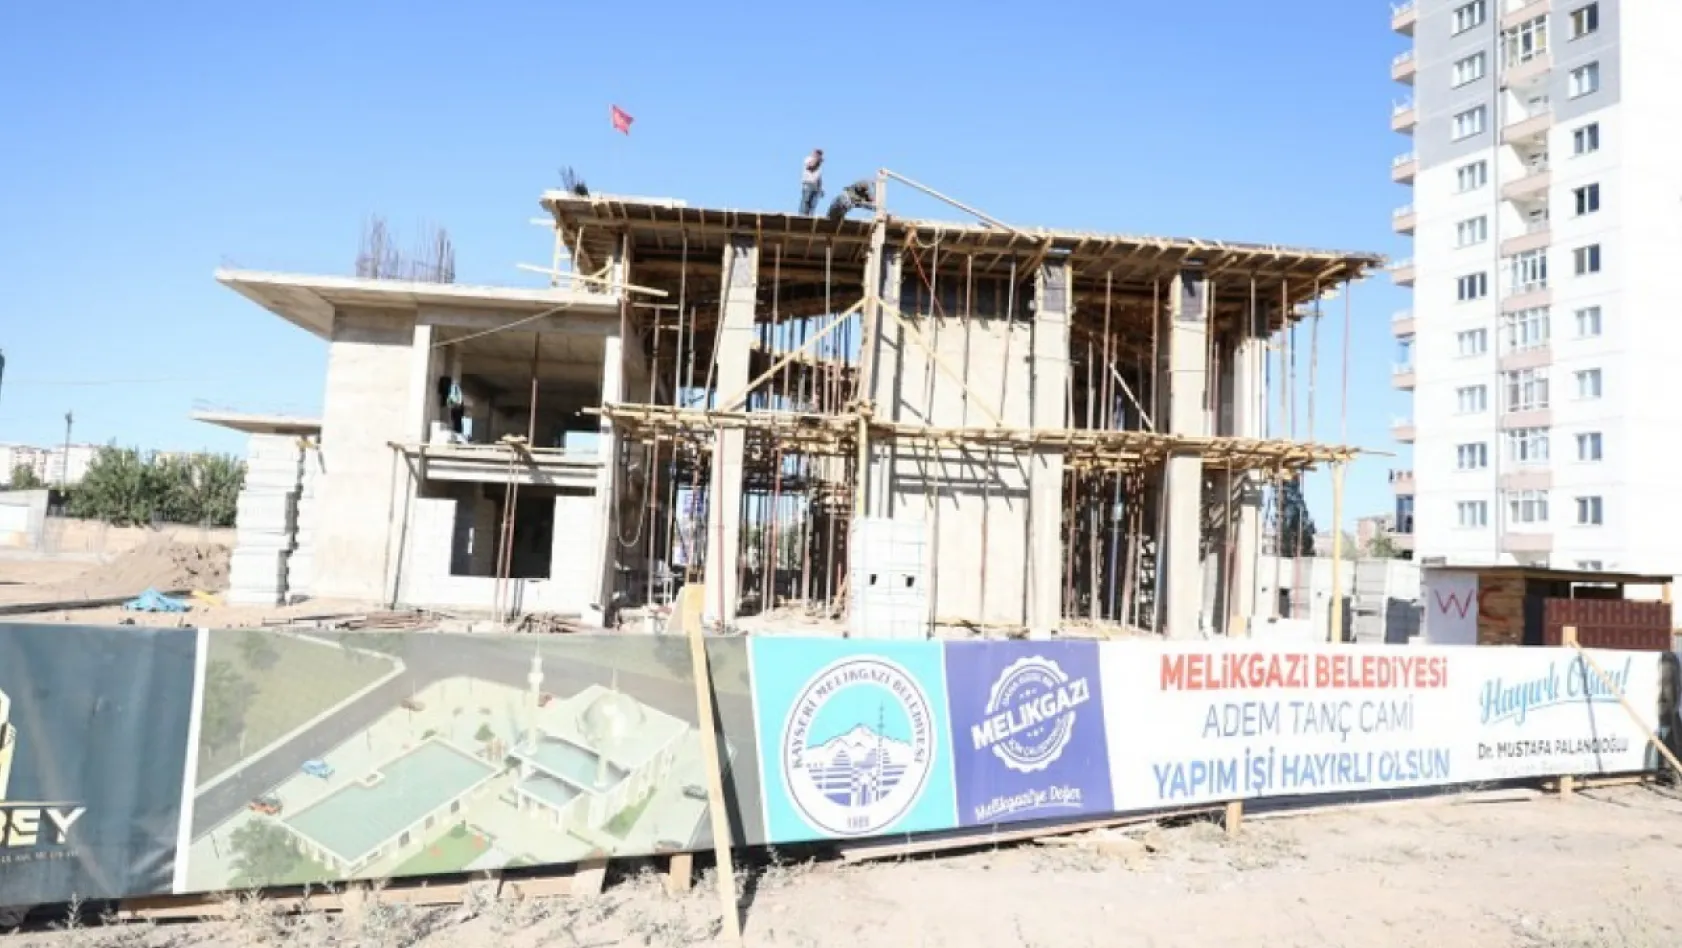 Melikgazi Belediyesi, Adem Tanç Cami'nin yapımına devam ediyor